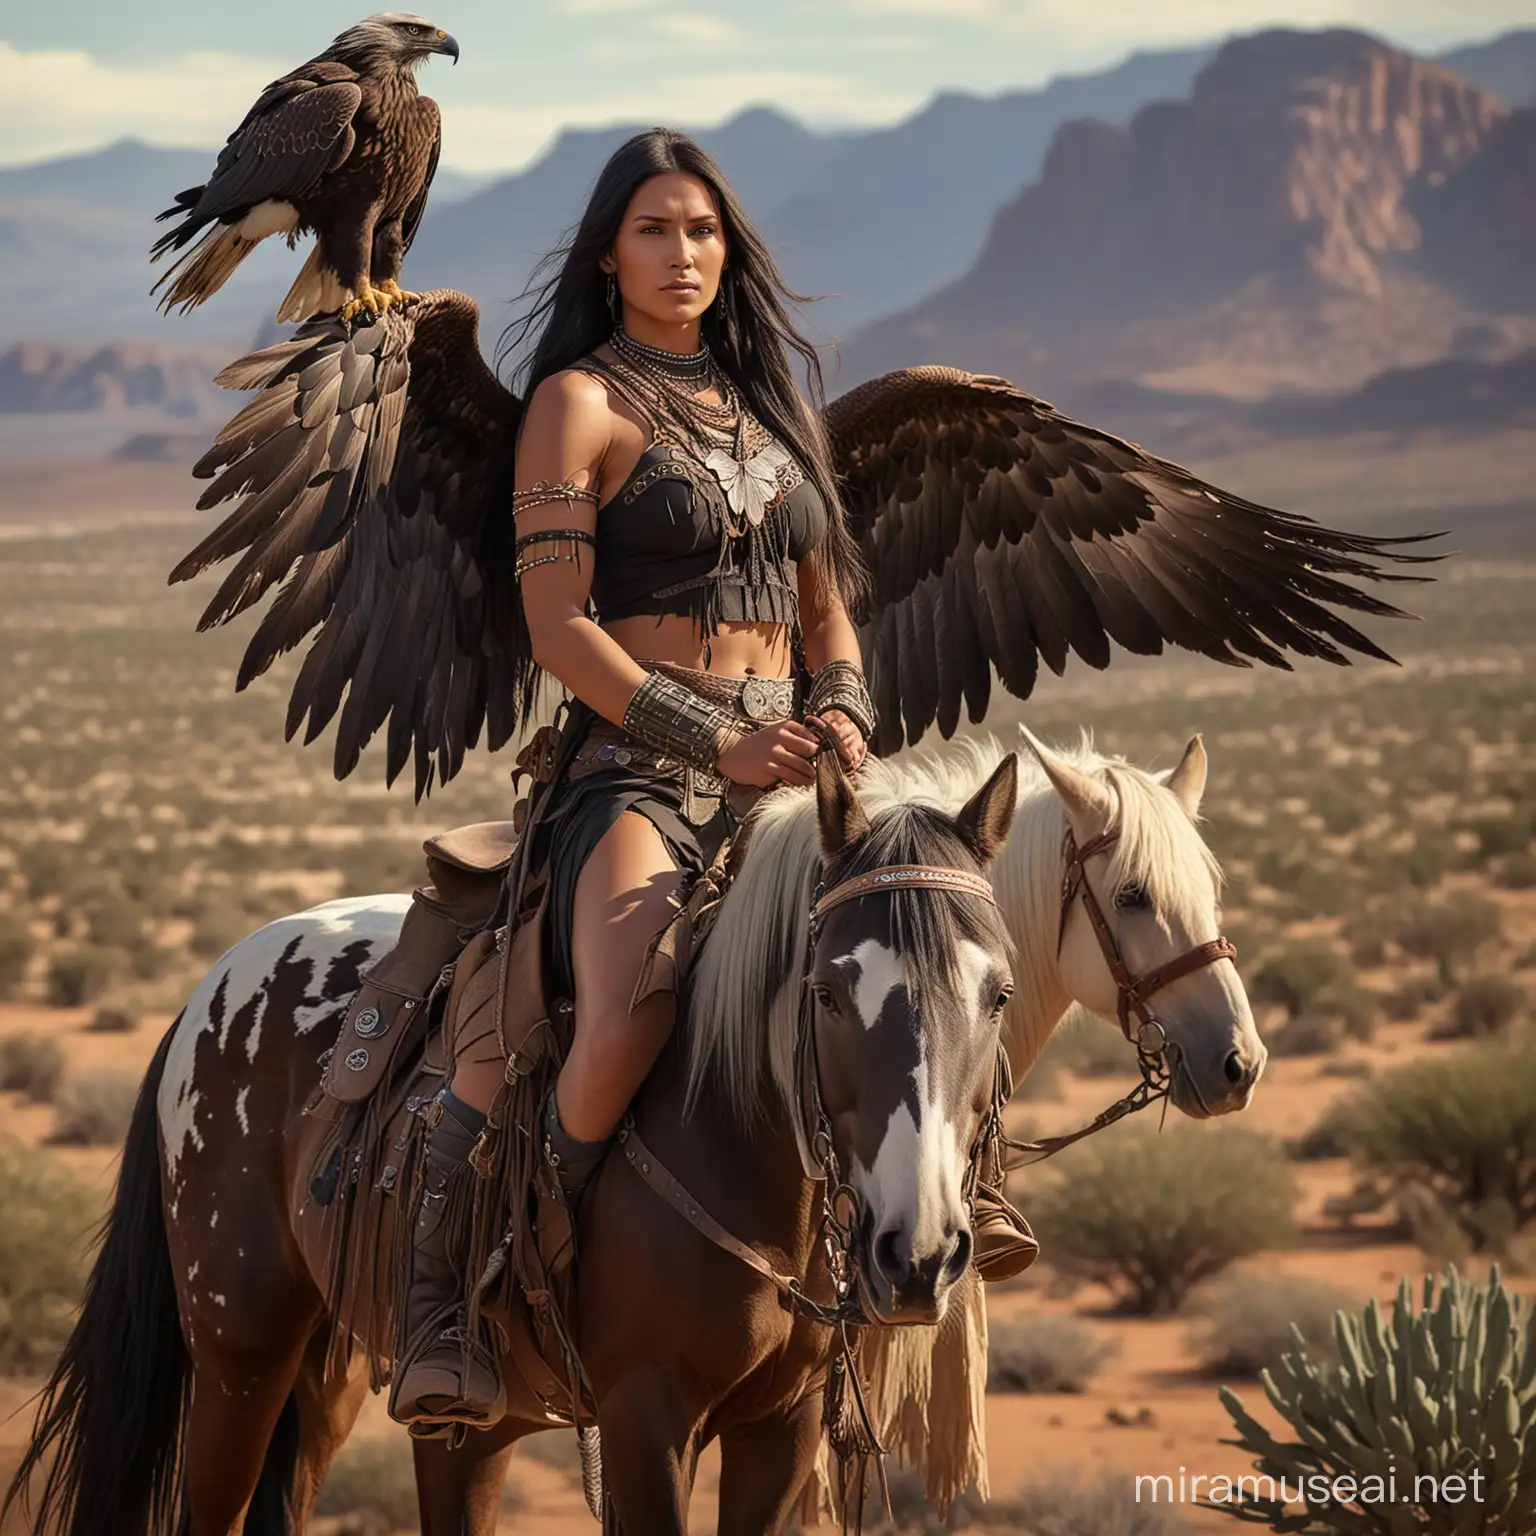 Hermosa guerrera apache, alta de cabellos negros largos, con alas grandes largas de aguila que le salen de la espalda y de fondo el desierto  y junto a ella una aguila gigante y un niño apache a caballo 

